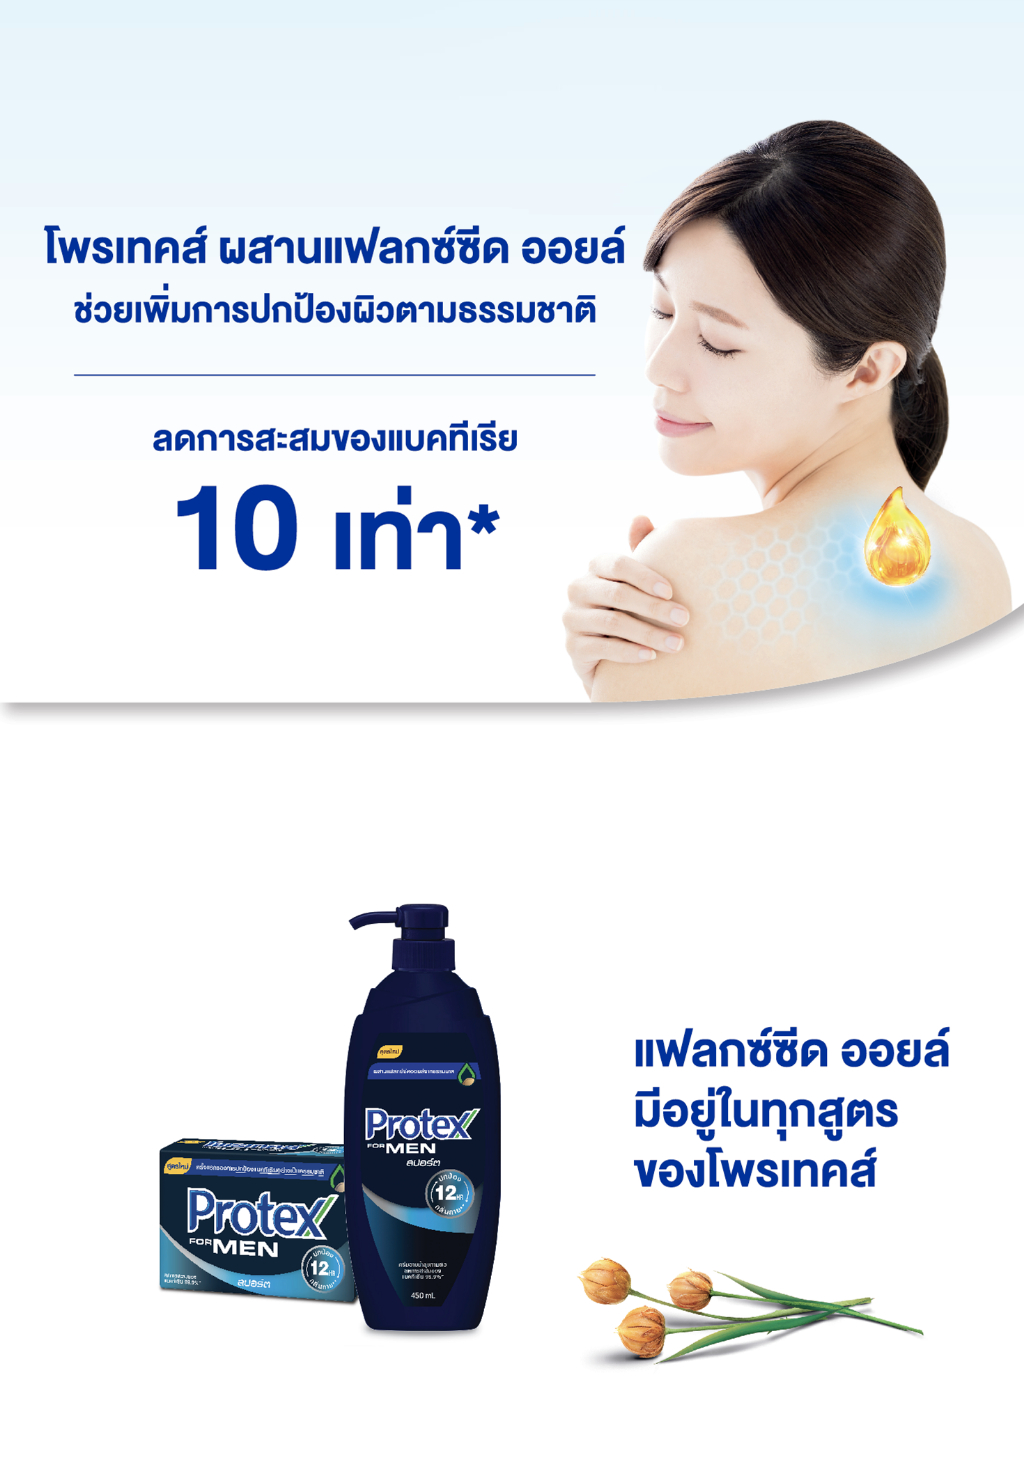 เกี่ยวกับสินค้า ครีมอาบน้ำโพรเทคส์ ฟอร์เมน สปอร์ต ขวดปั๊ม 450 มล. Protex For Men Sport Shower Cream 450 ml Pump